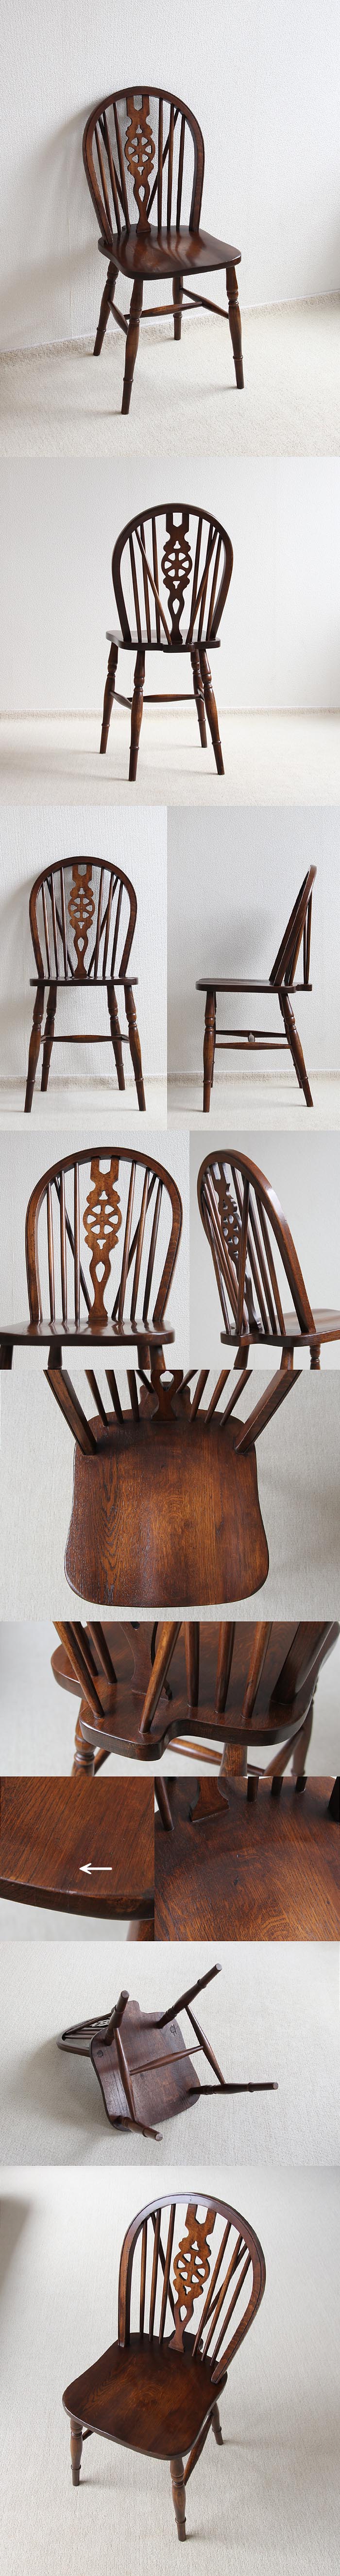 イギリス アンティーク調 ホイールバックチェア 木製椅子 Reprodux「Bevan Funnell」V-584